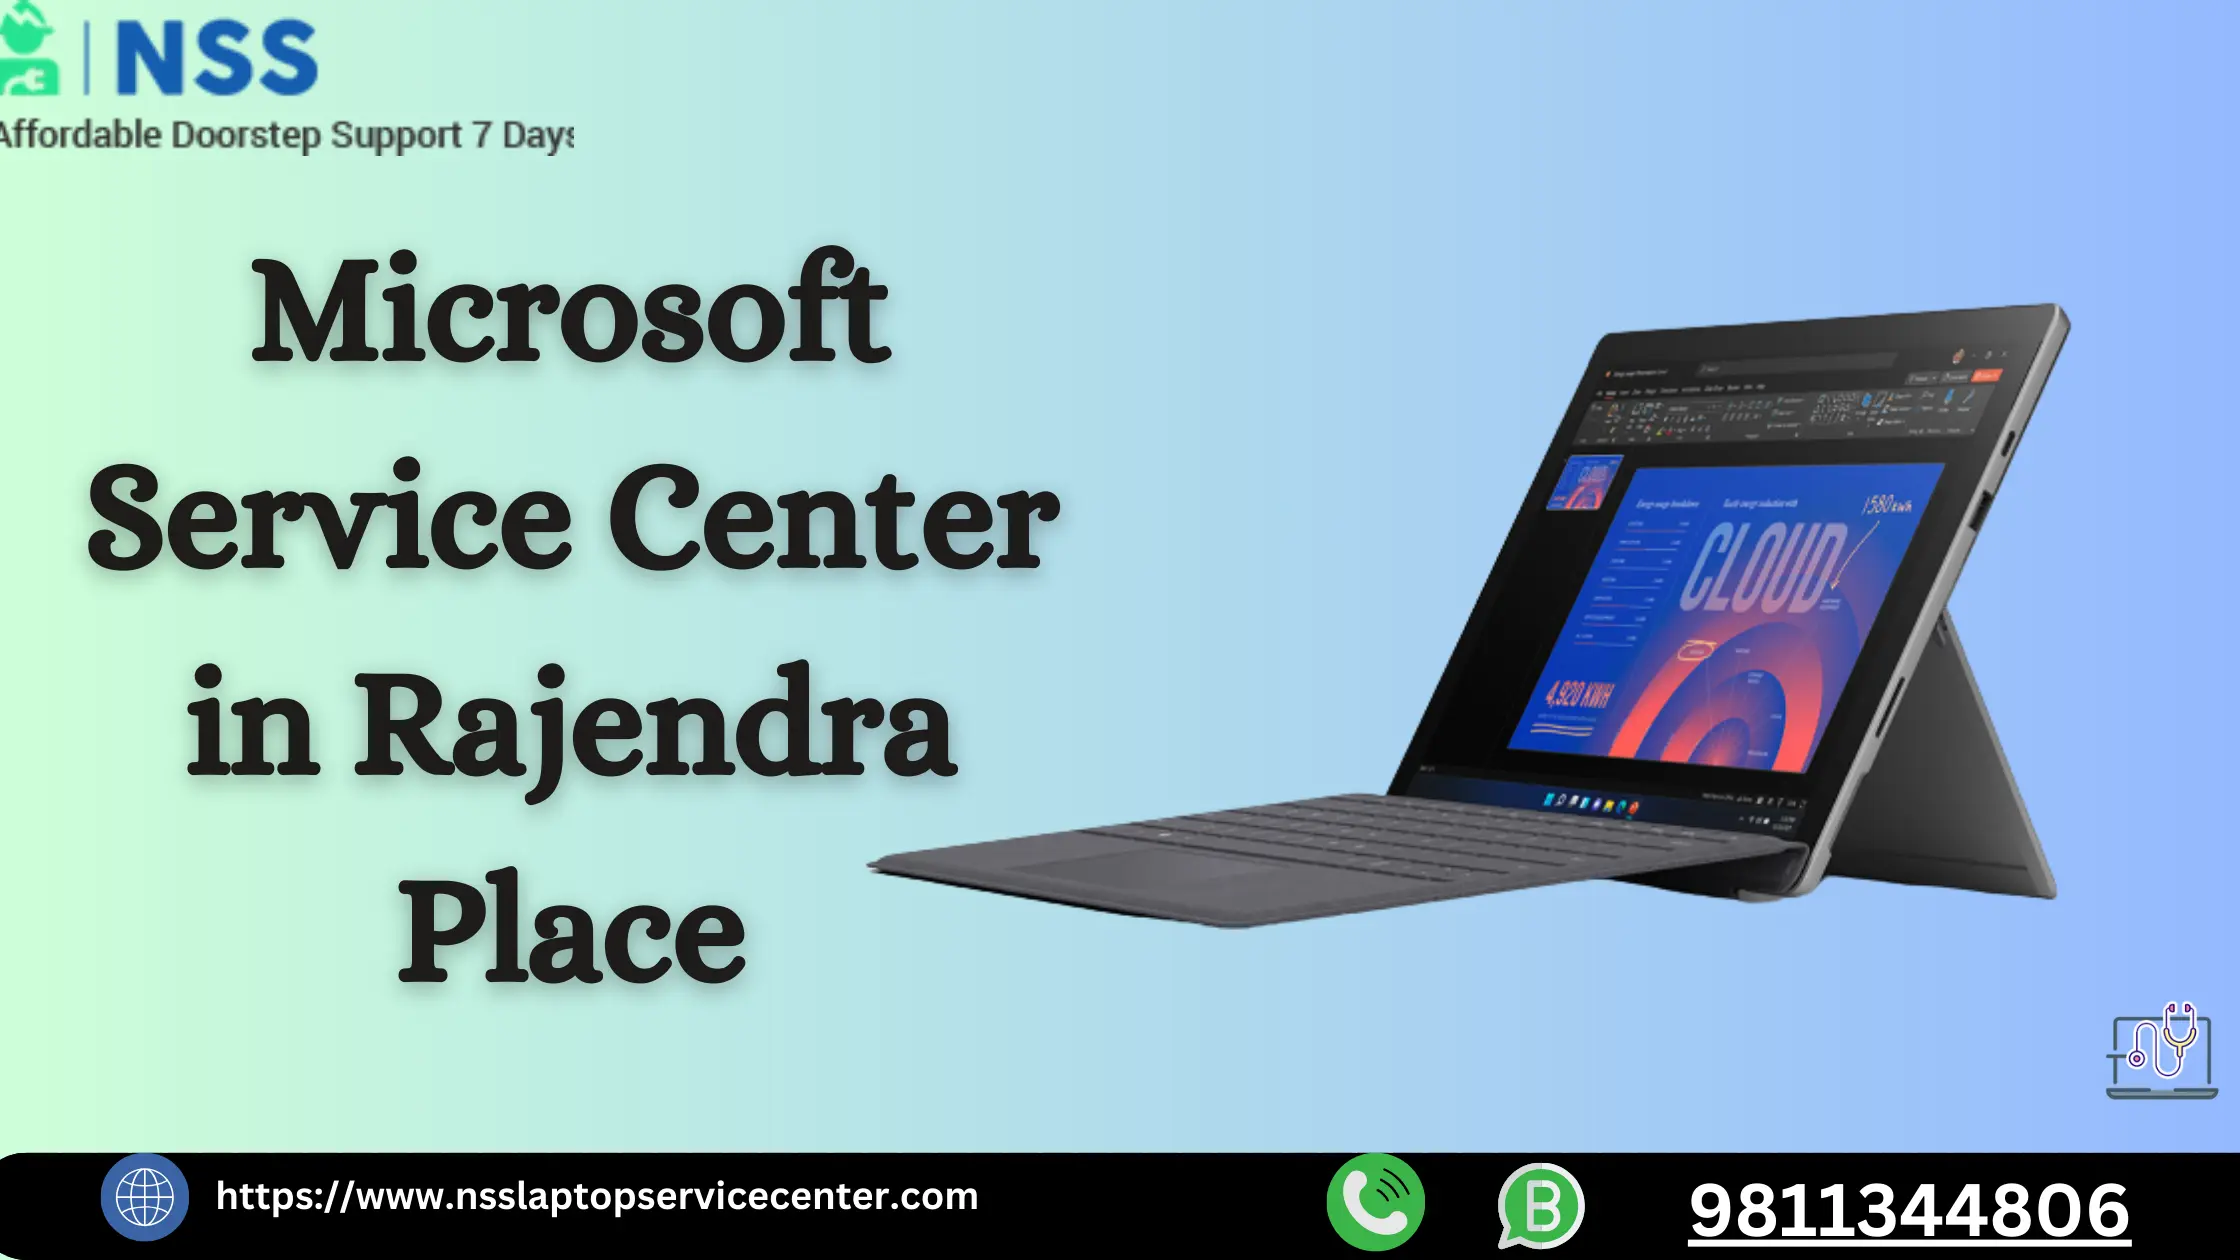 Microsoft Service Center in Rajendra Place Near Delhi